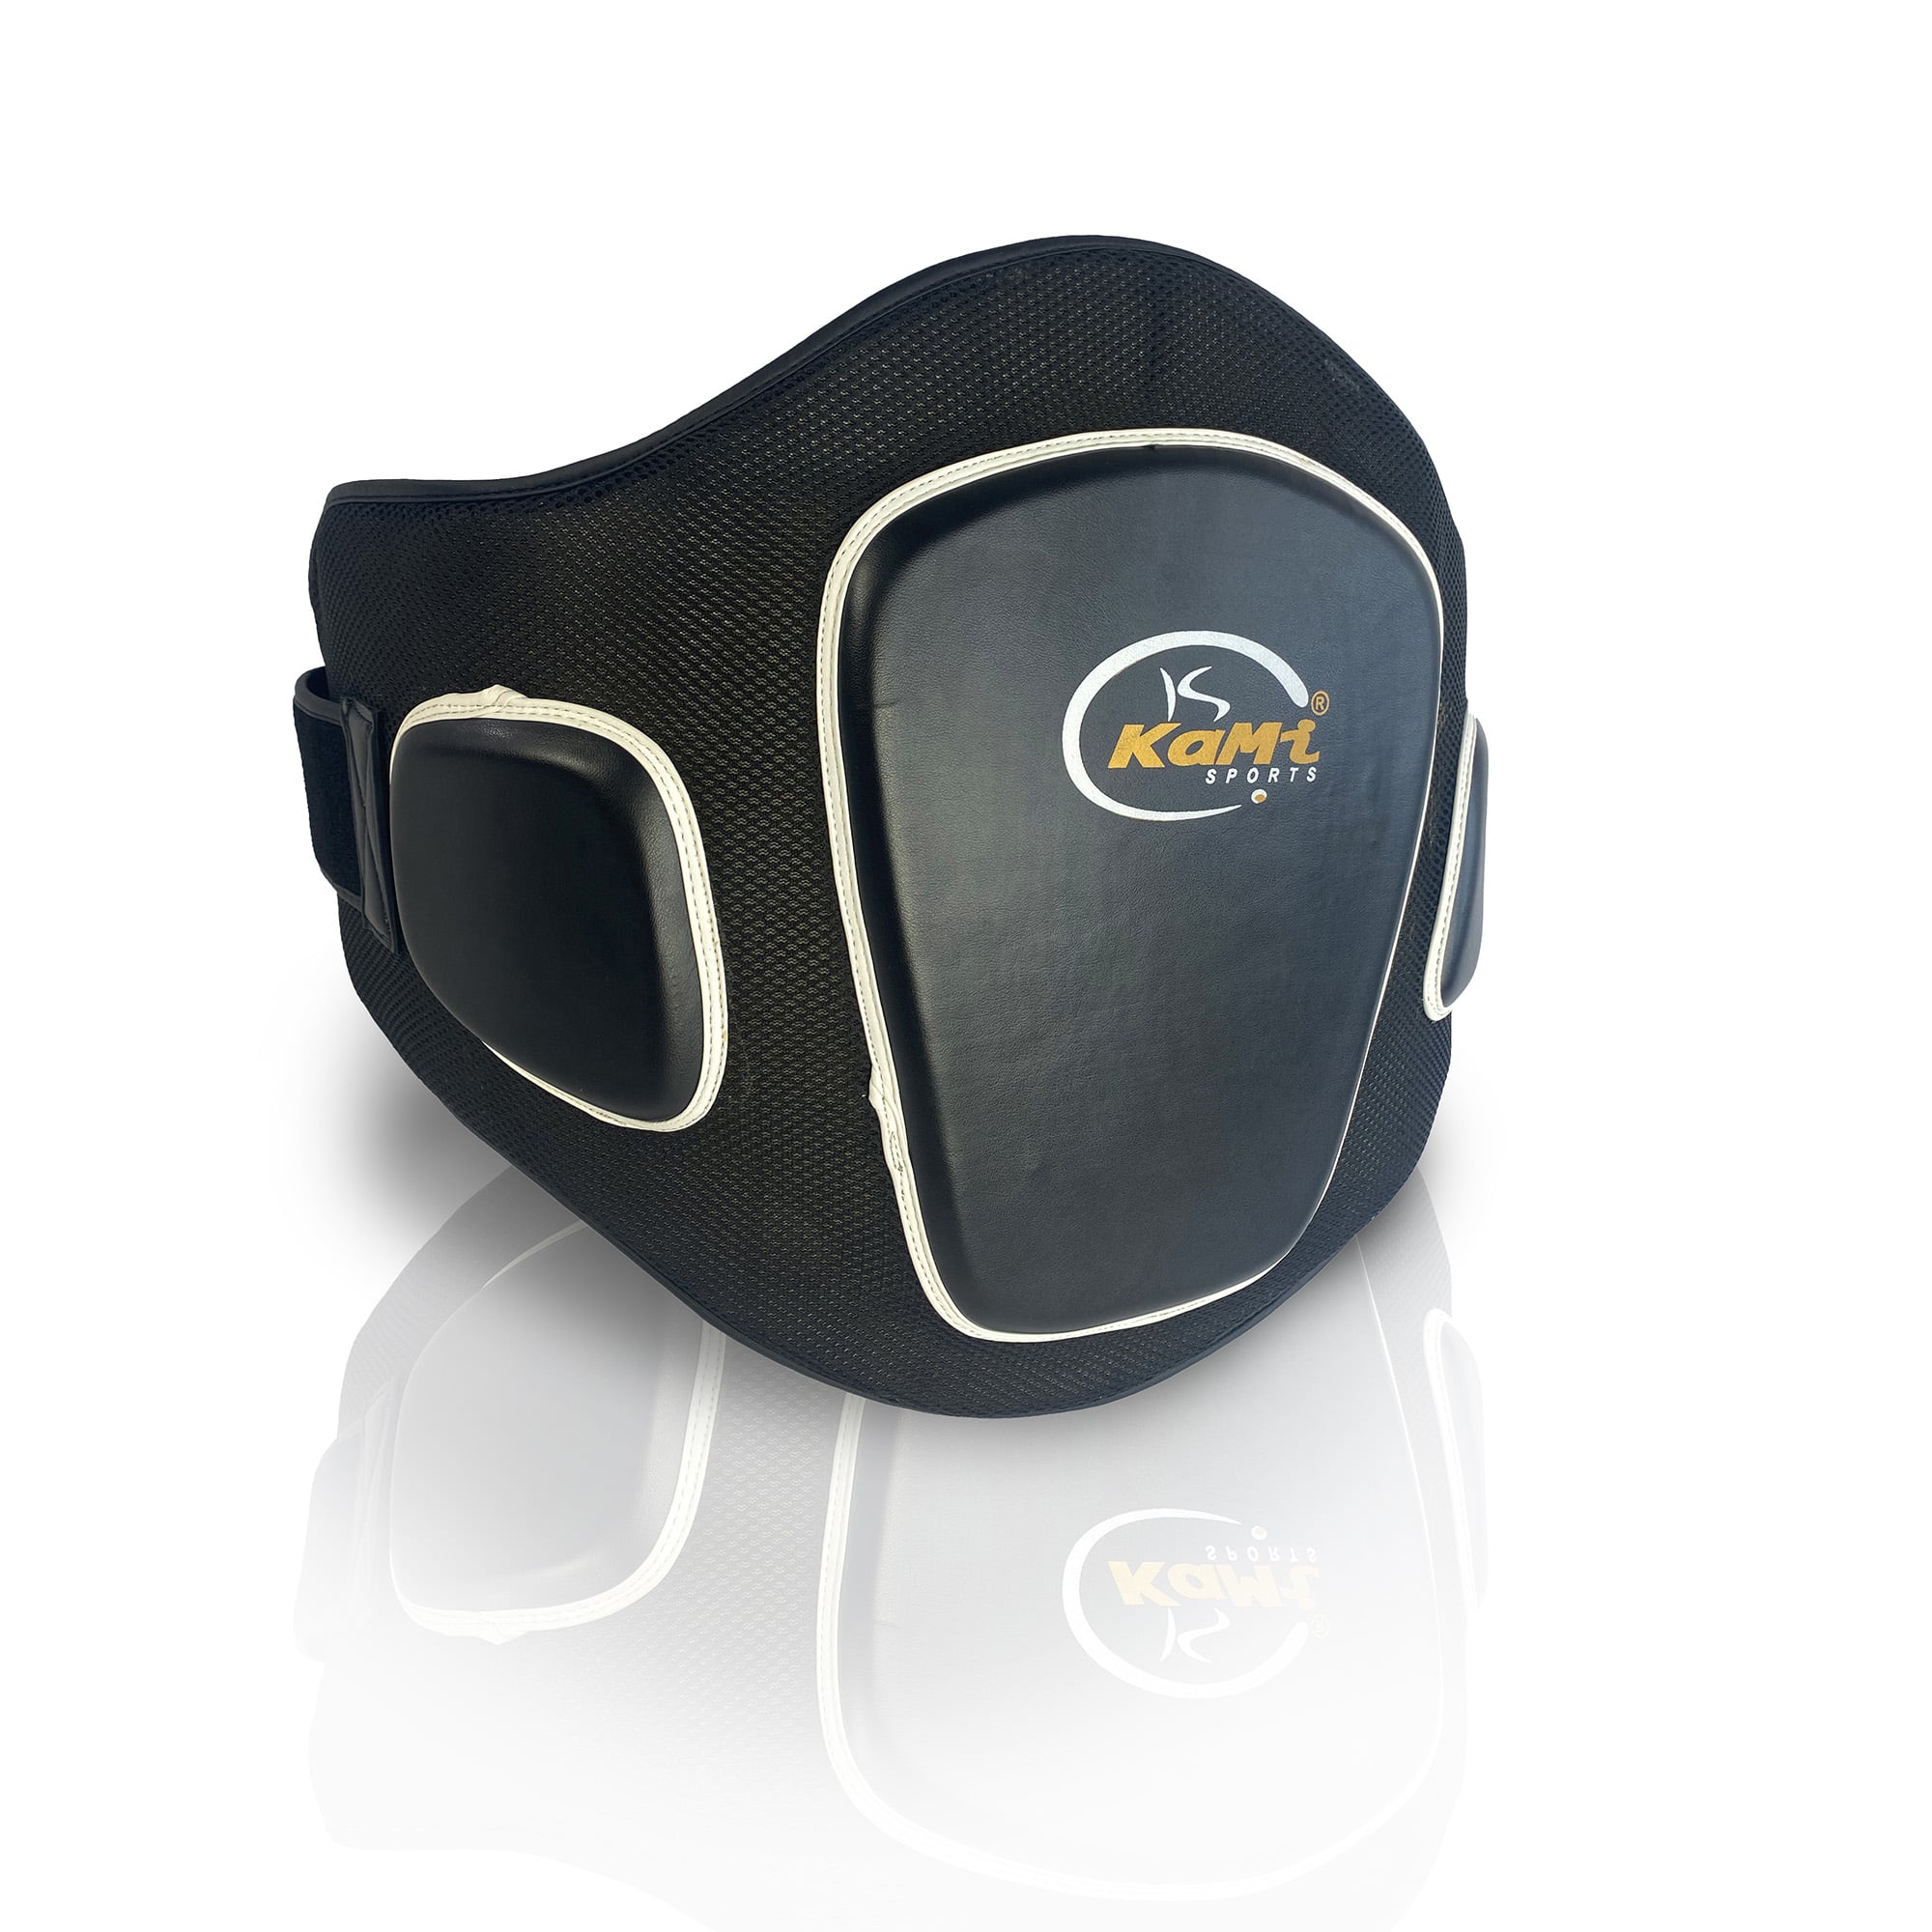 Hochentwickelter Box-Körperschutz mit präzisen Fokuszielpunkten, bietet maximale Stoßdämpfung und komfortable Passform, ideal für Trainer und Boxer.